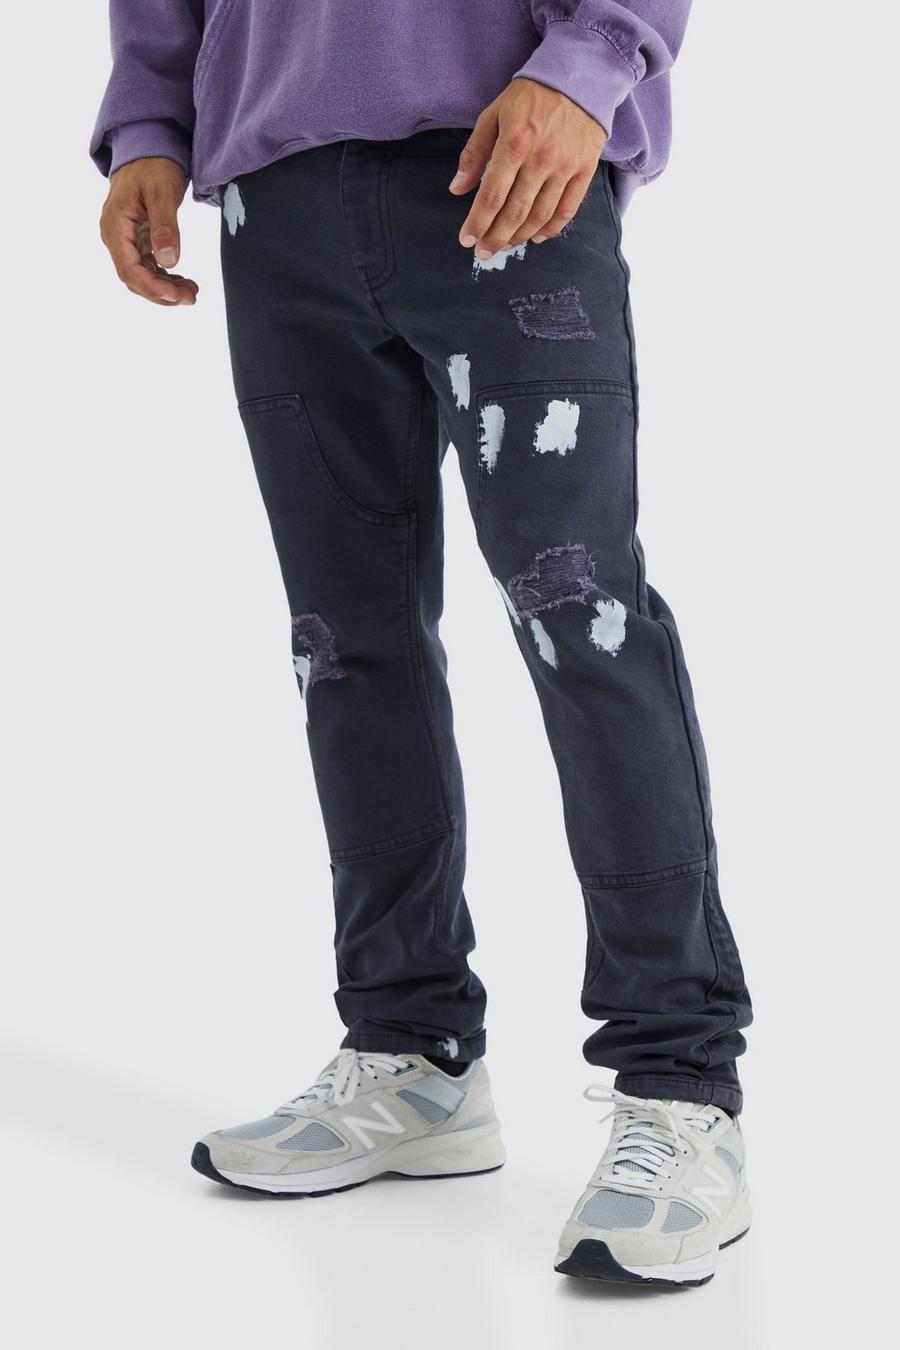 Jeans Slim Fit con pannelli da lavoro e schizzi di colore, Mid grey gris